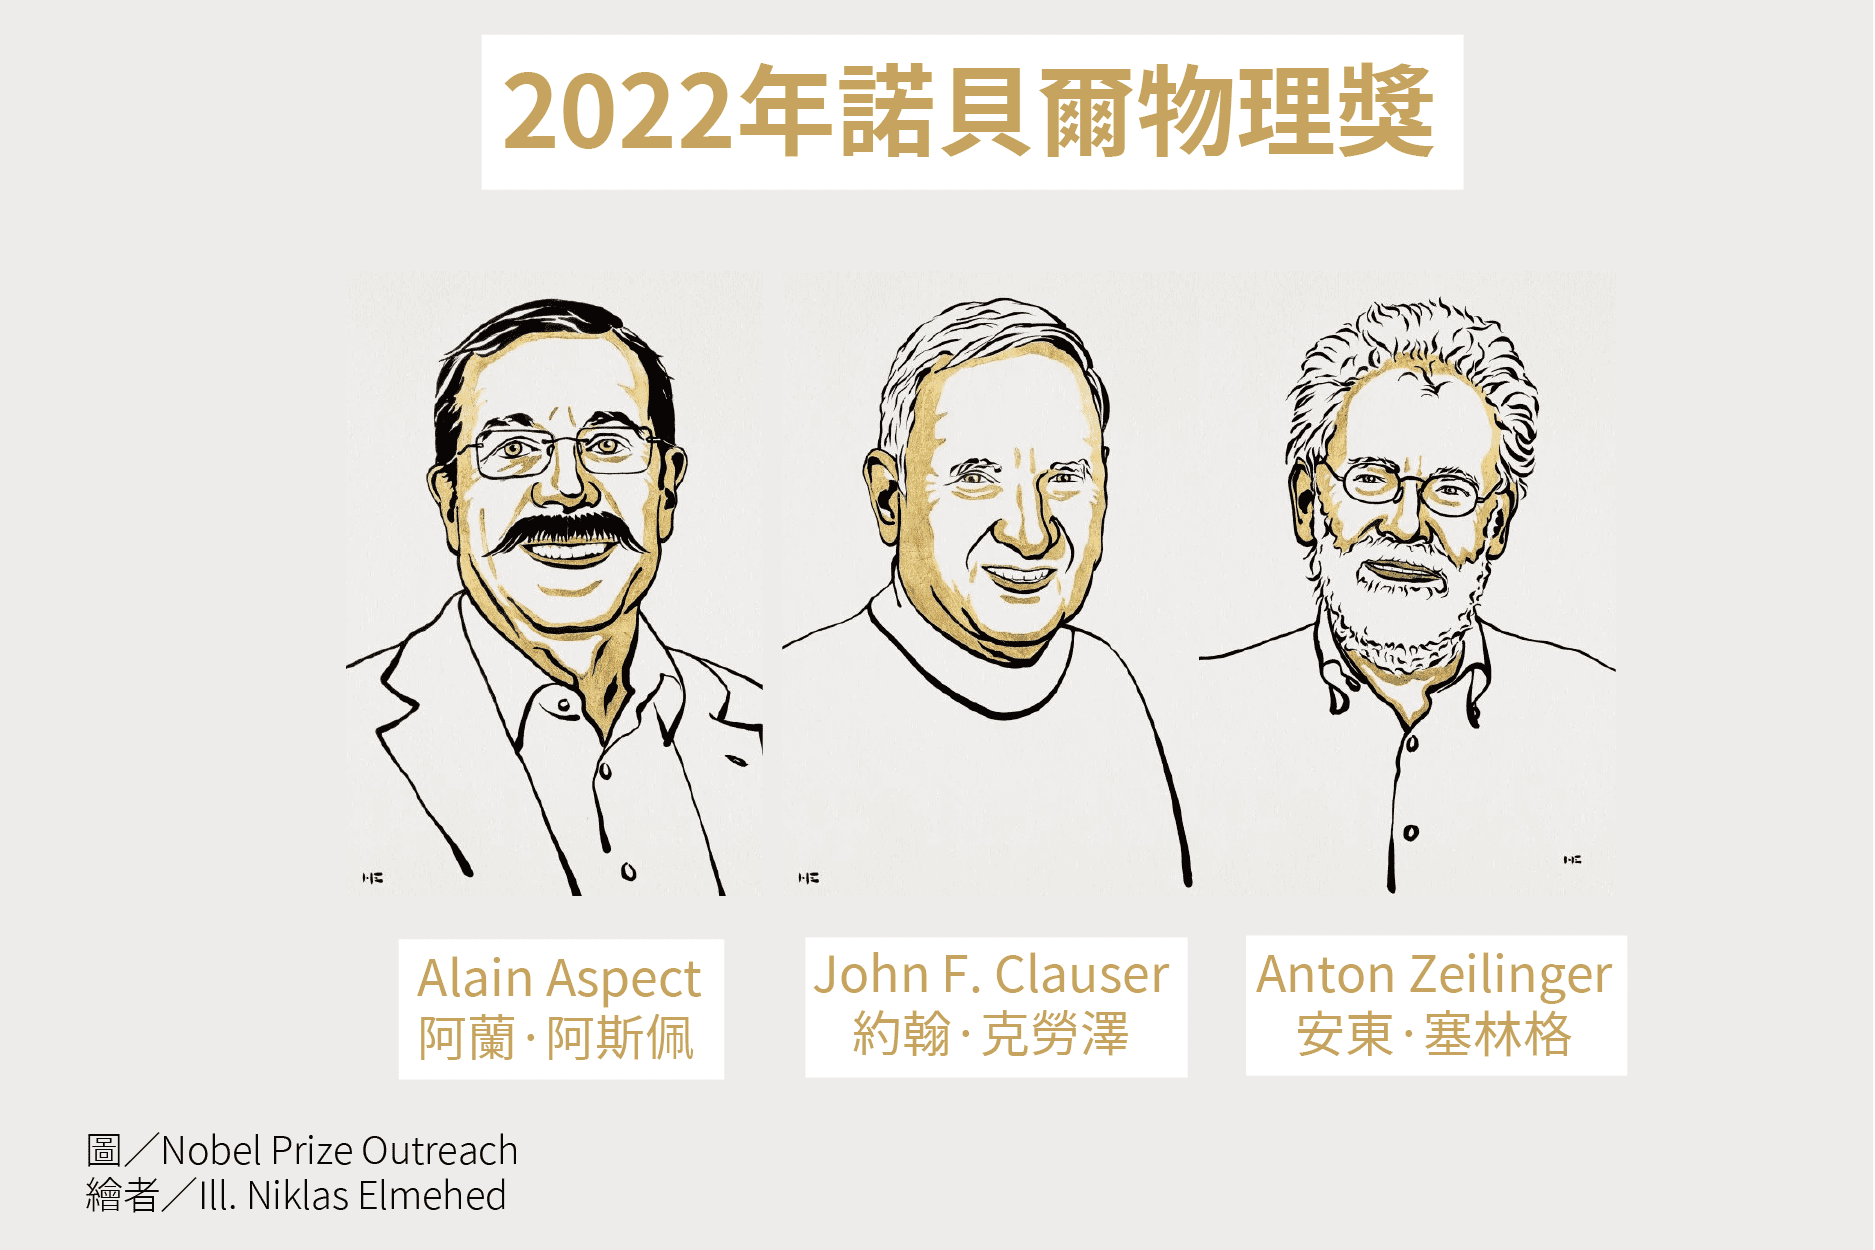 2022諾貝爾物理獎官方新聞稿全文翻譯